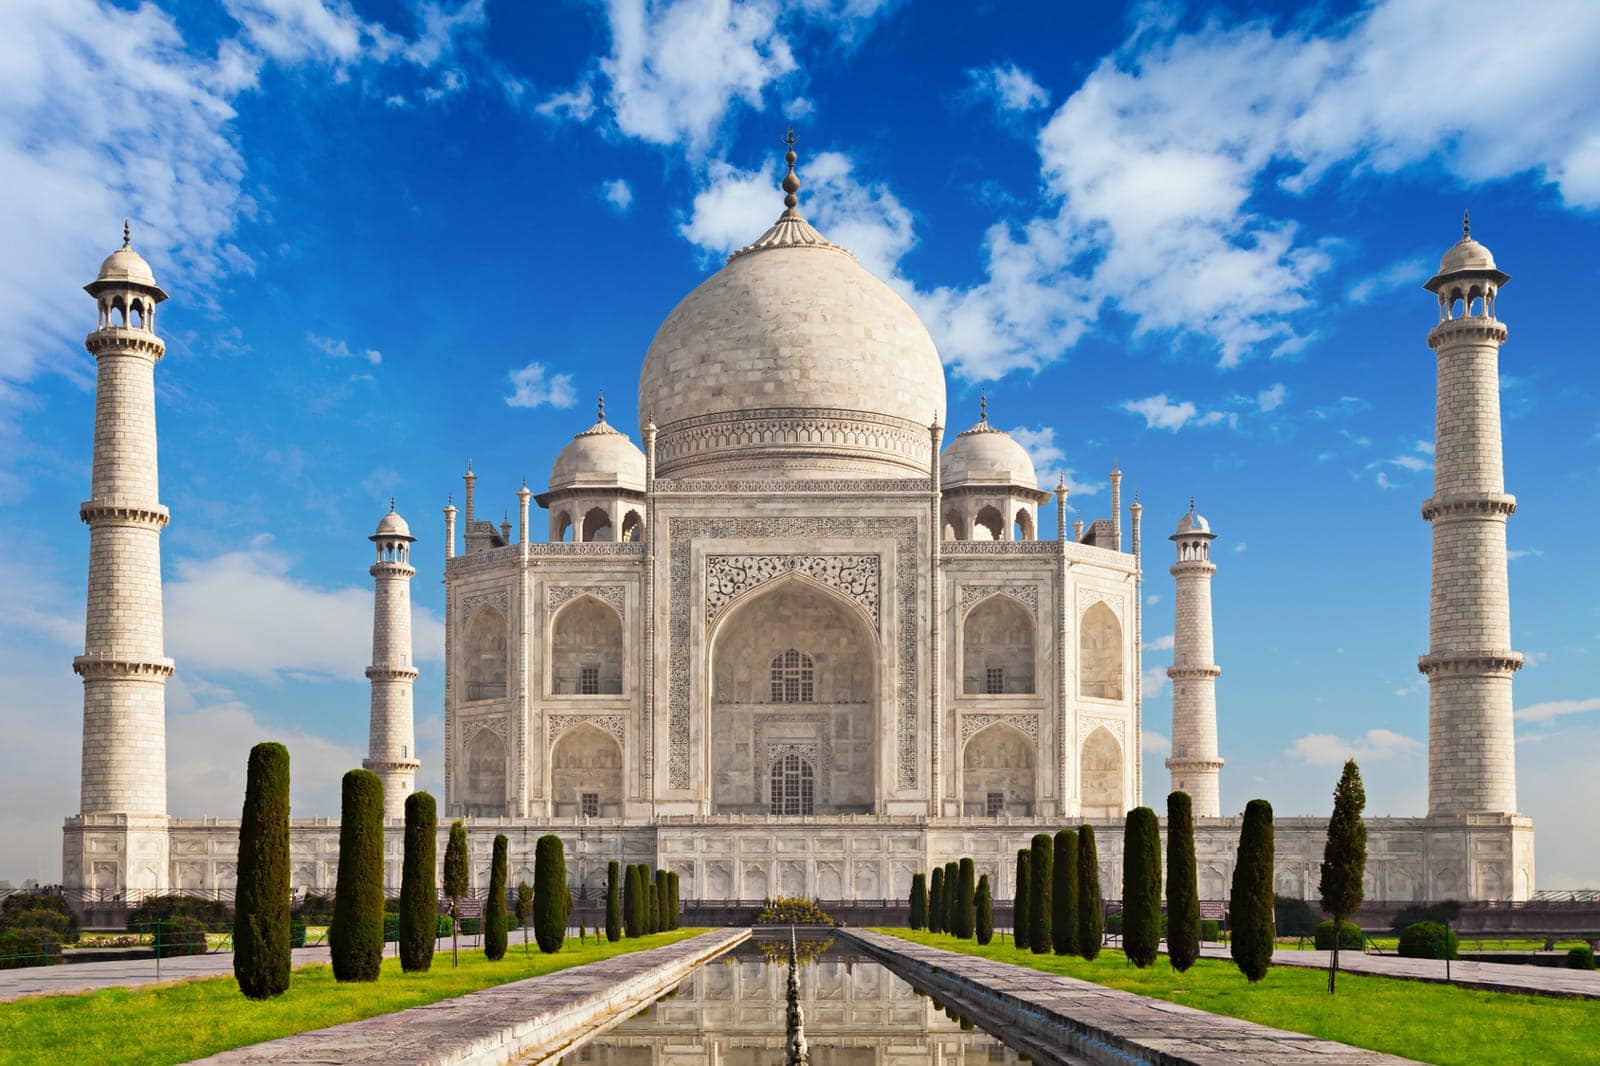 Radreise Indien Rajasthan - das prachtvolle Taj Mahal